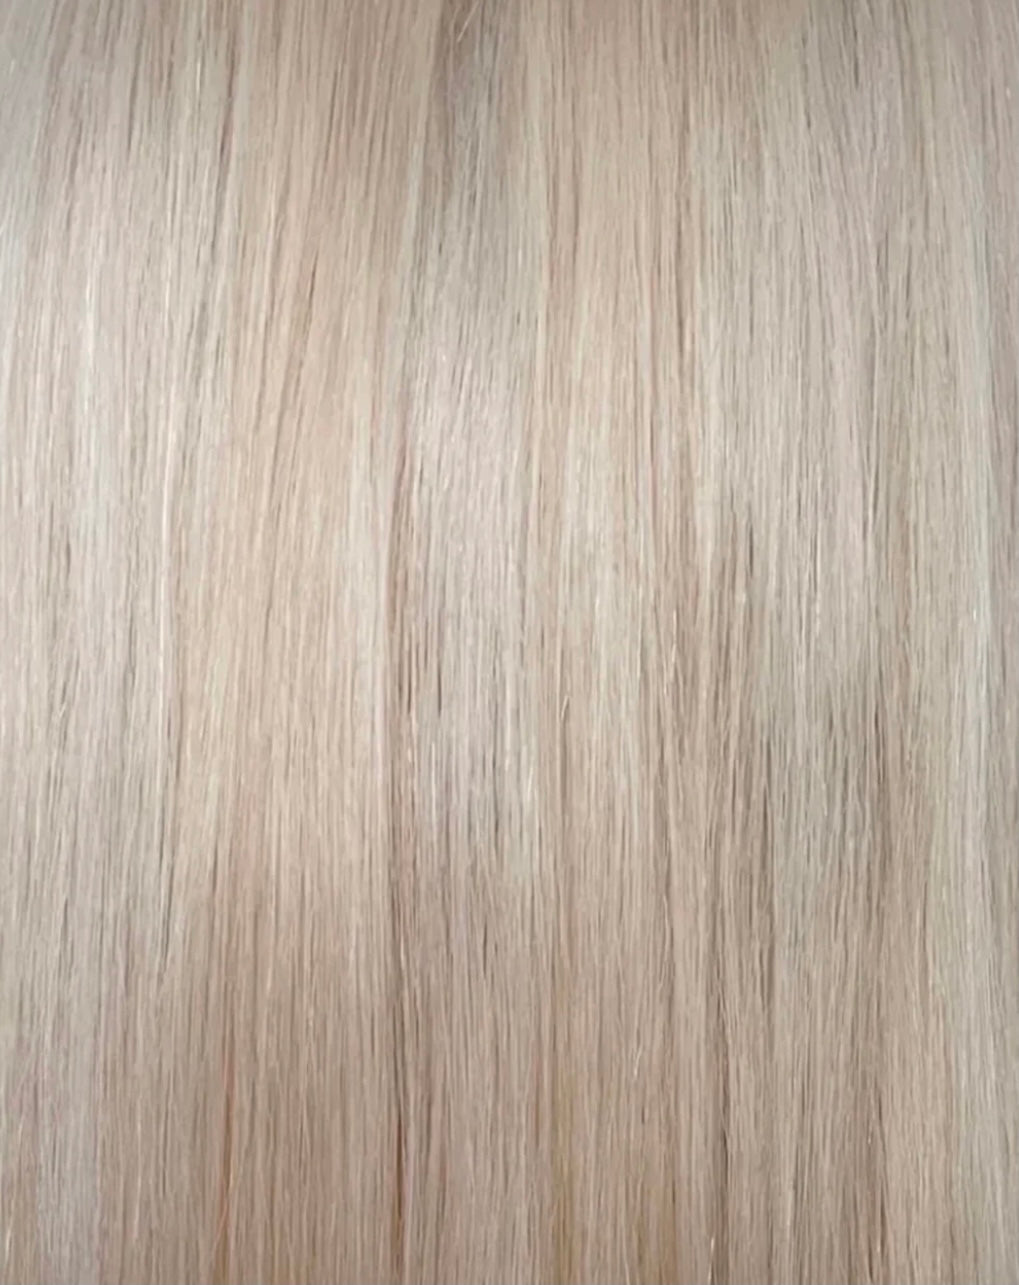 Custom colour - HD LACE FRONT wig - 14” - European hair - 20.5/21” cap